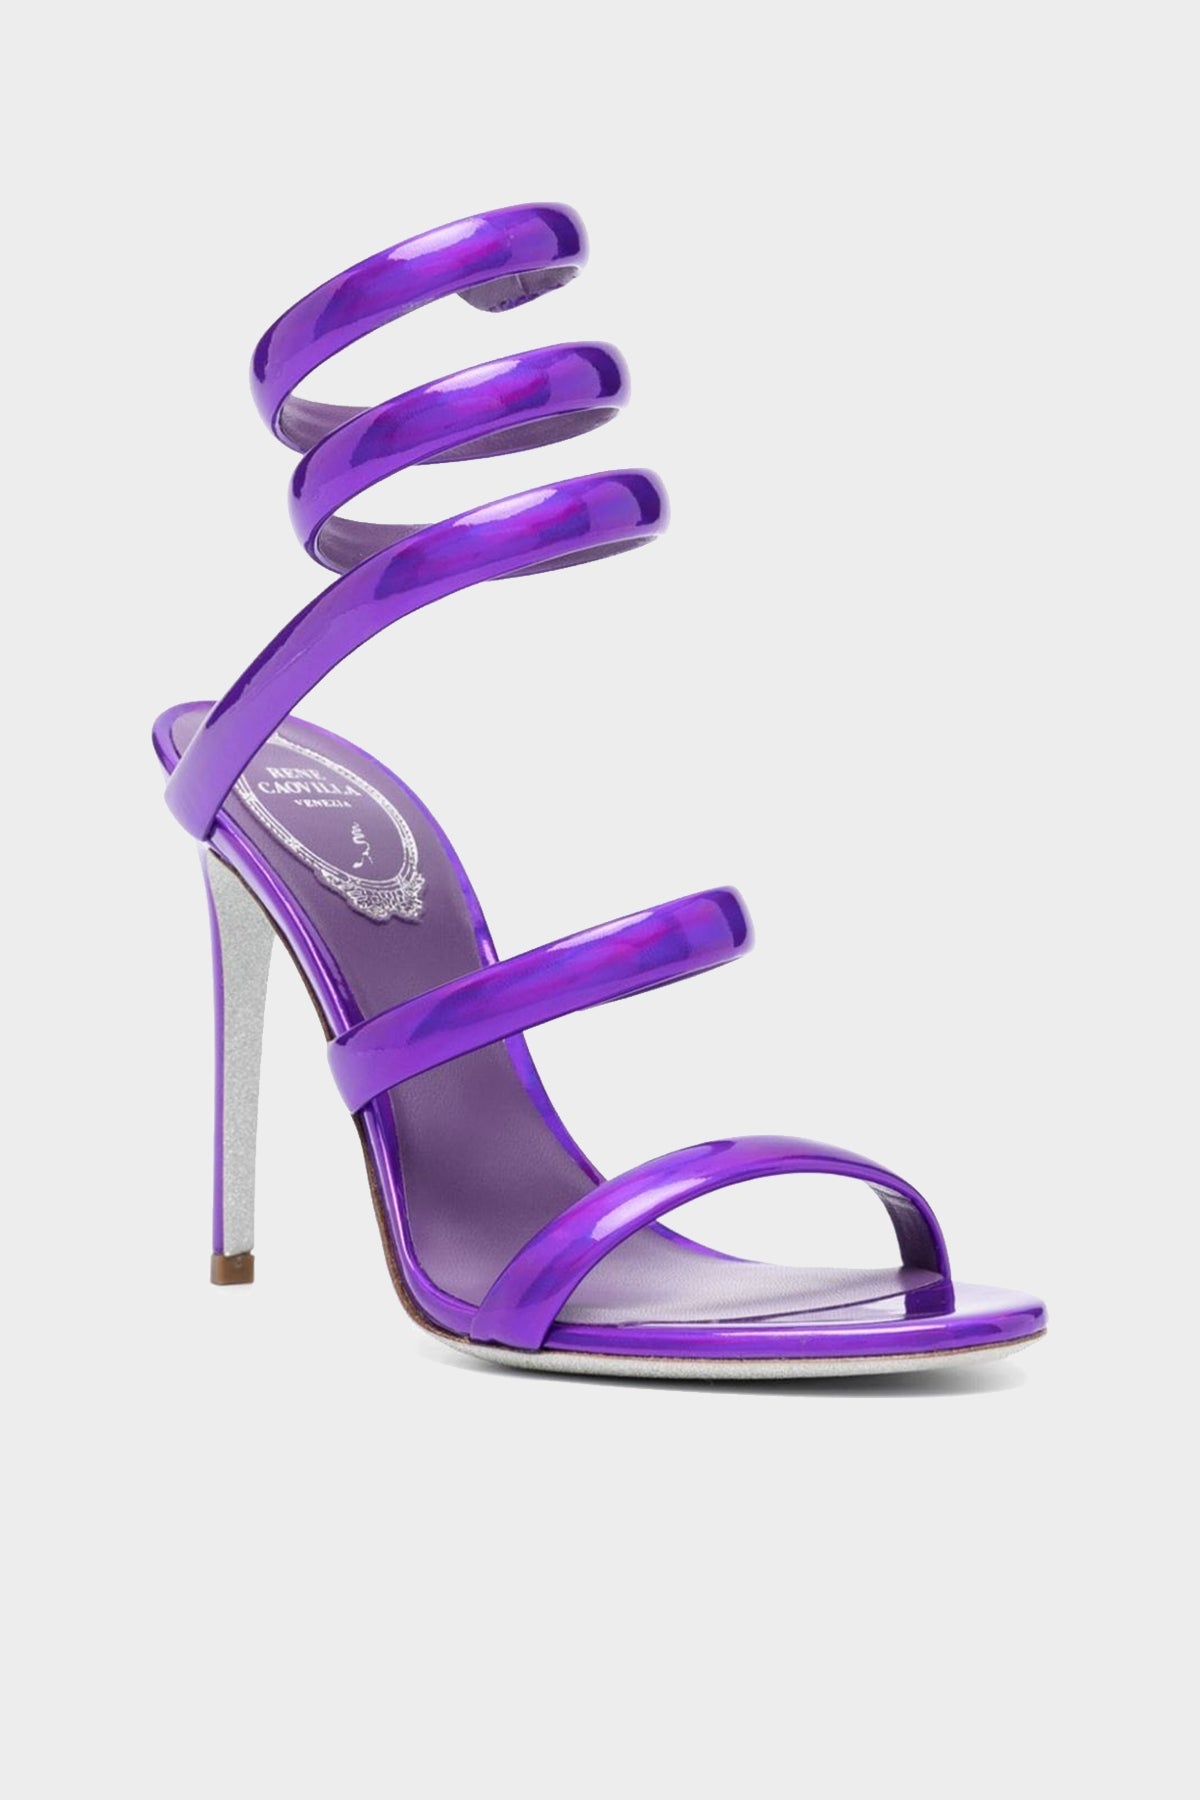 Cleo Sandal 105 in Violet - shop-olivia.com